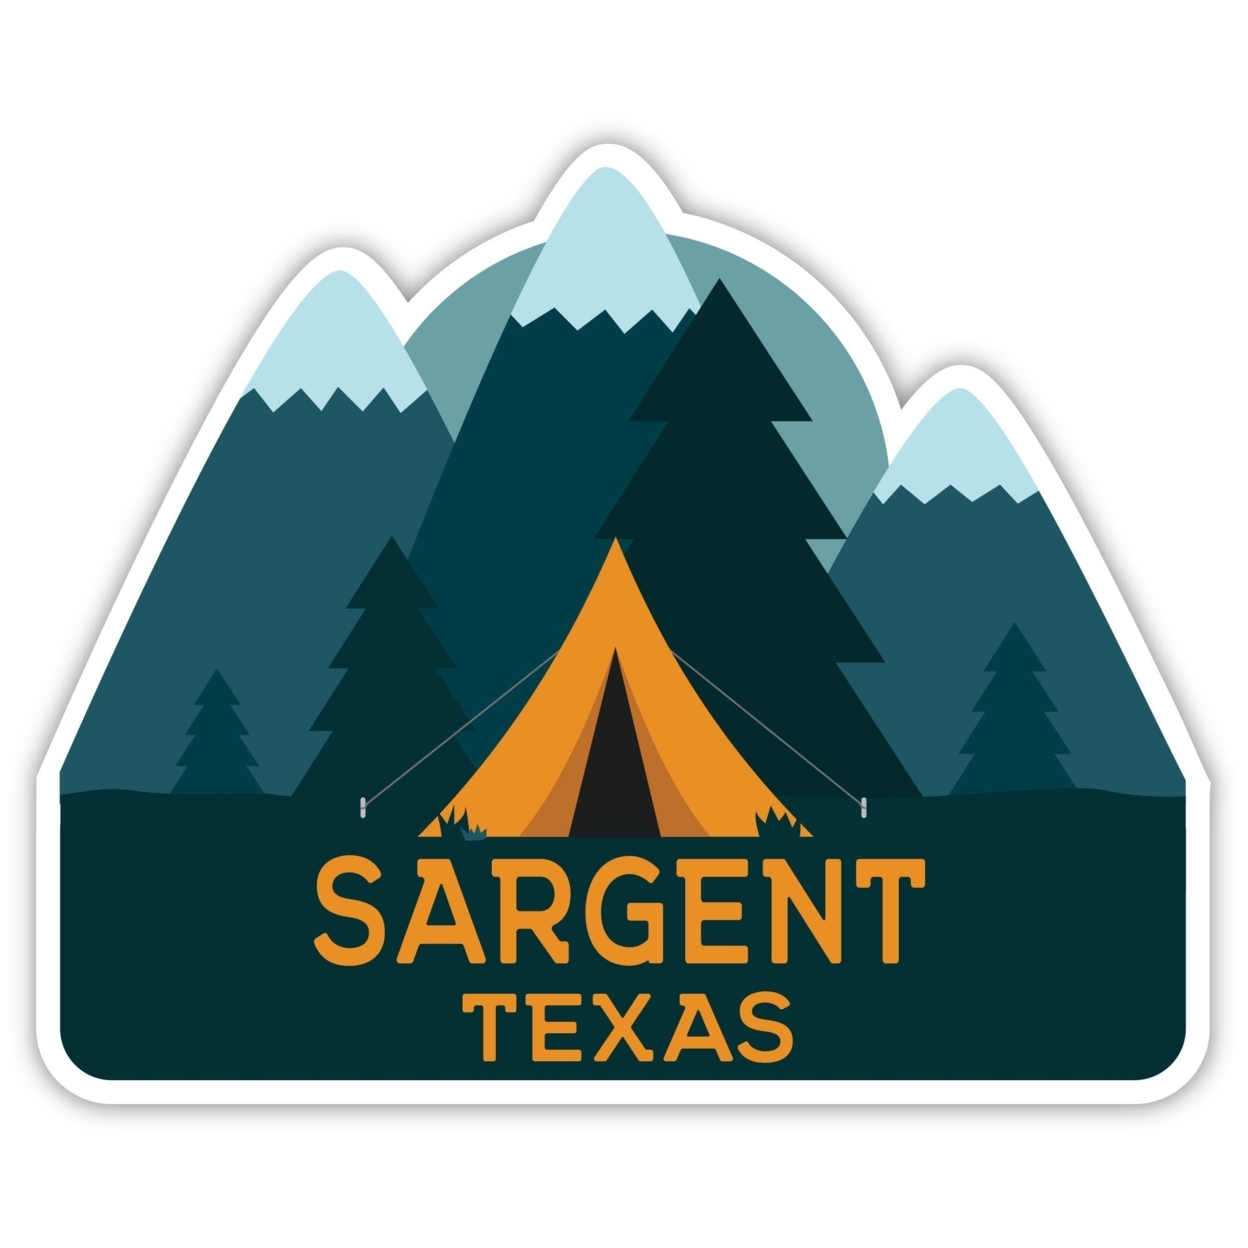 Sargent Texas Souvenir Decorative Stickers (Choose Theme And Size) - Single Unit, 2-Inch, Tent